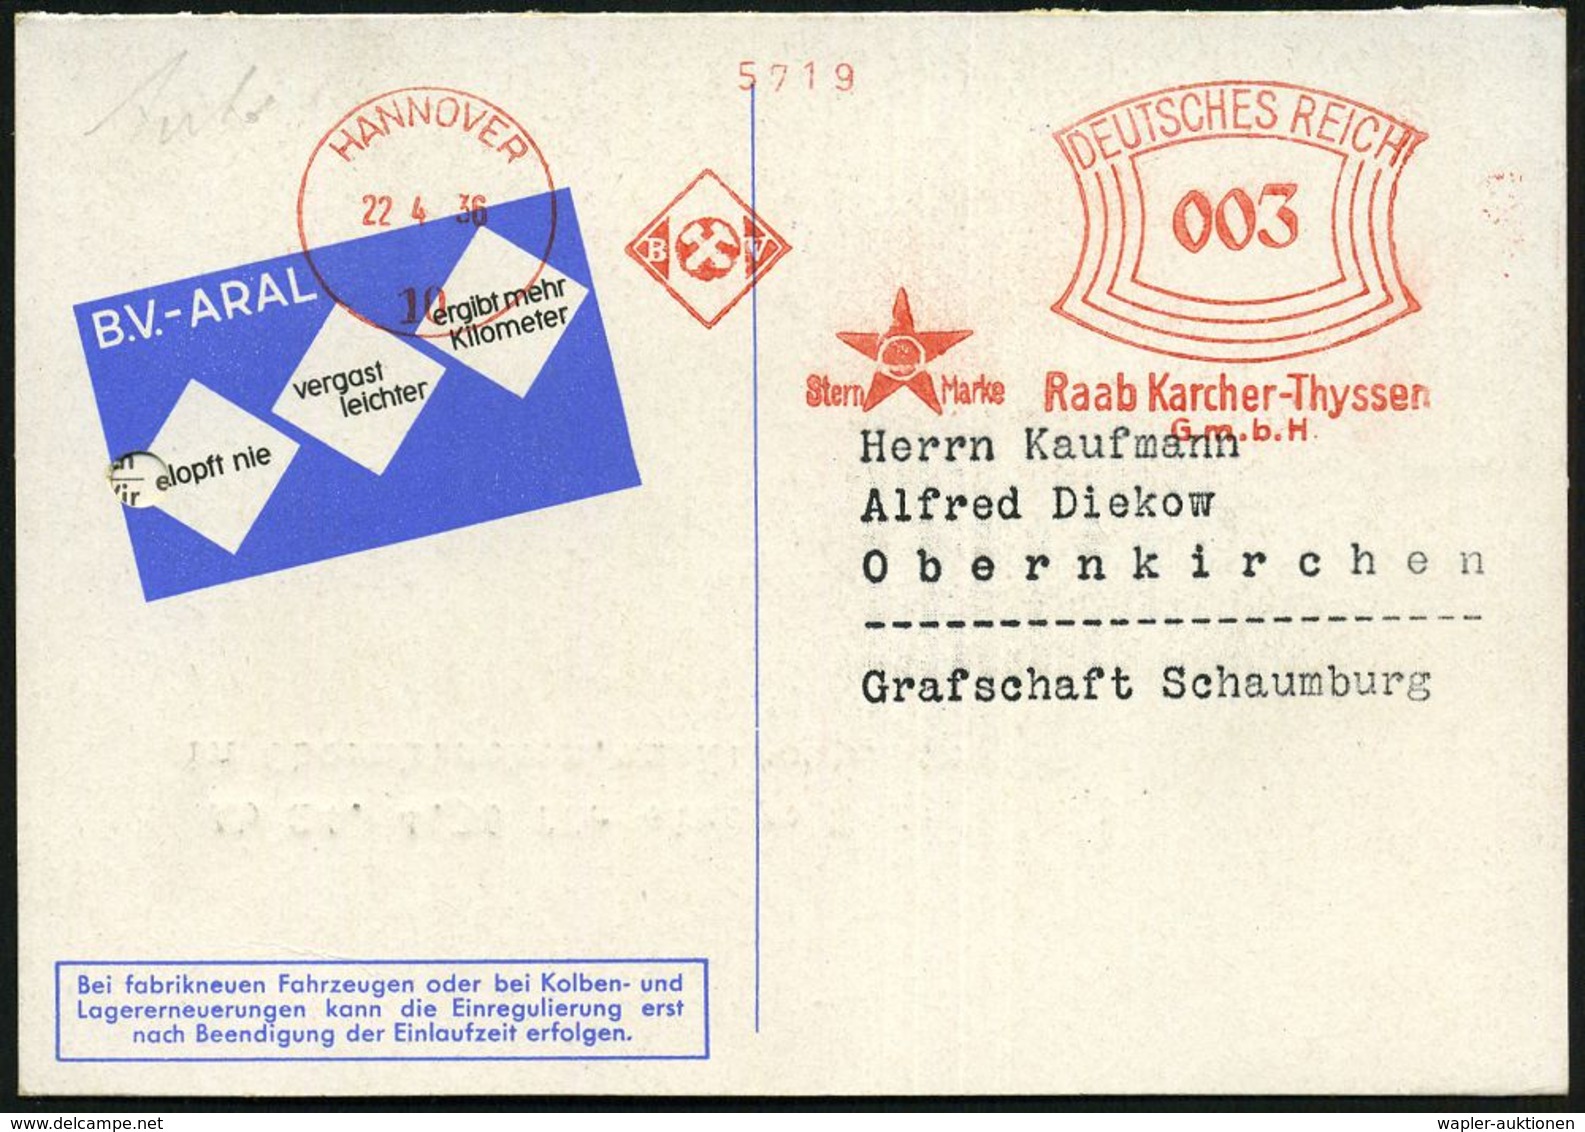 WERKSTATT / GARAGE / TANKSTELLE : HANNOVER/ 10/ BV/ ..Raab Karcher-Thyssen/ GmbH 1936 (22.4.) AFS (Aral-Stern-Logo) Klap - Automobili